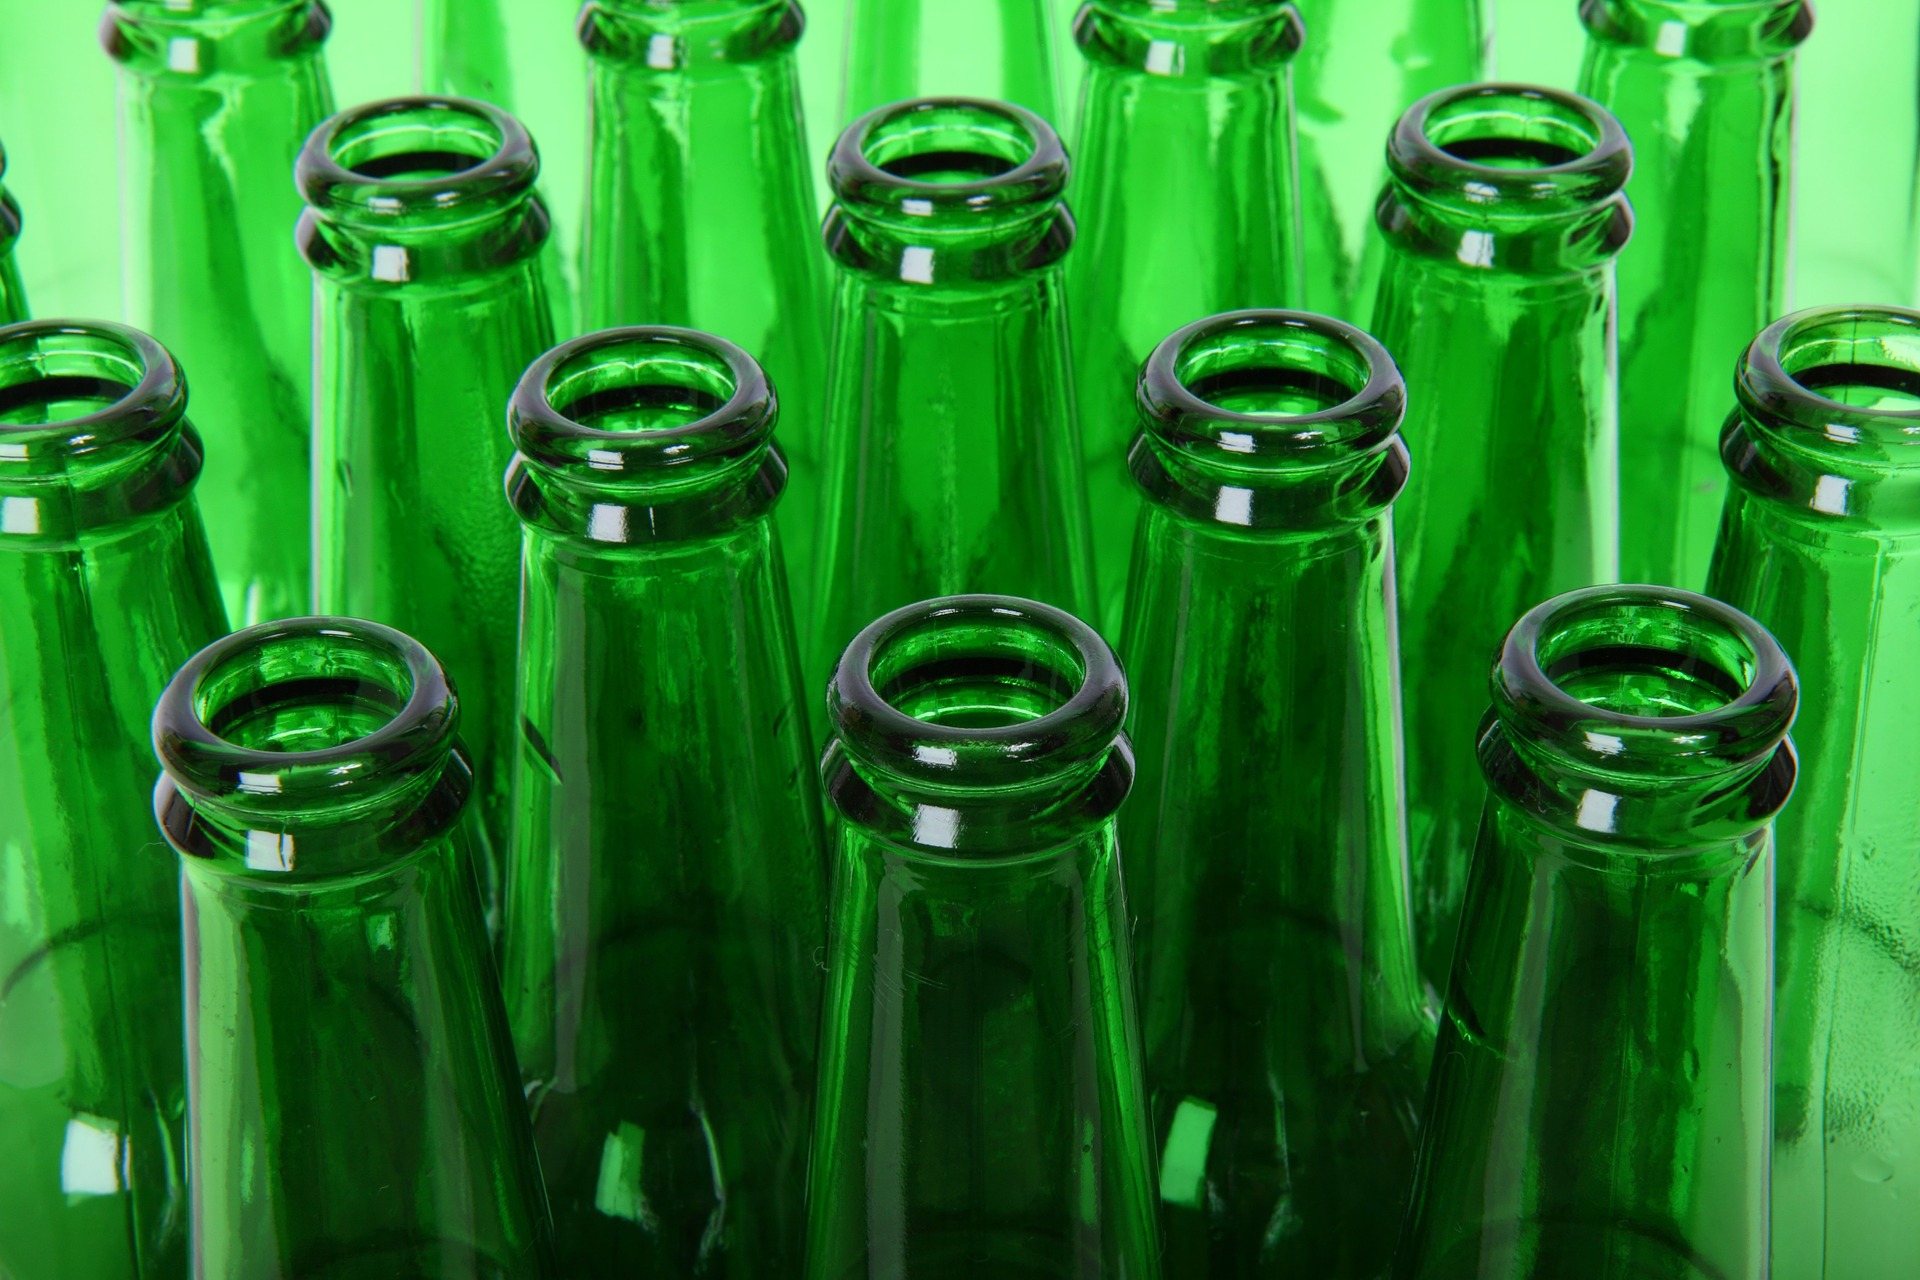 A palackok újrahasználatával nagyobb mértékben csökkenthető a környezetterhelés, mint az egyszerű újrahasznosítással